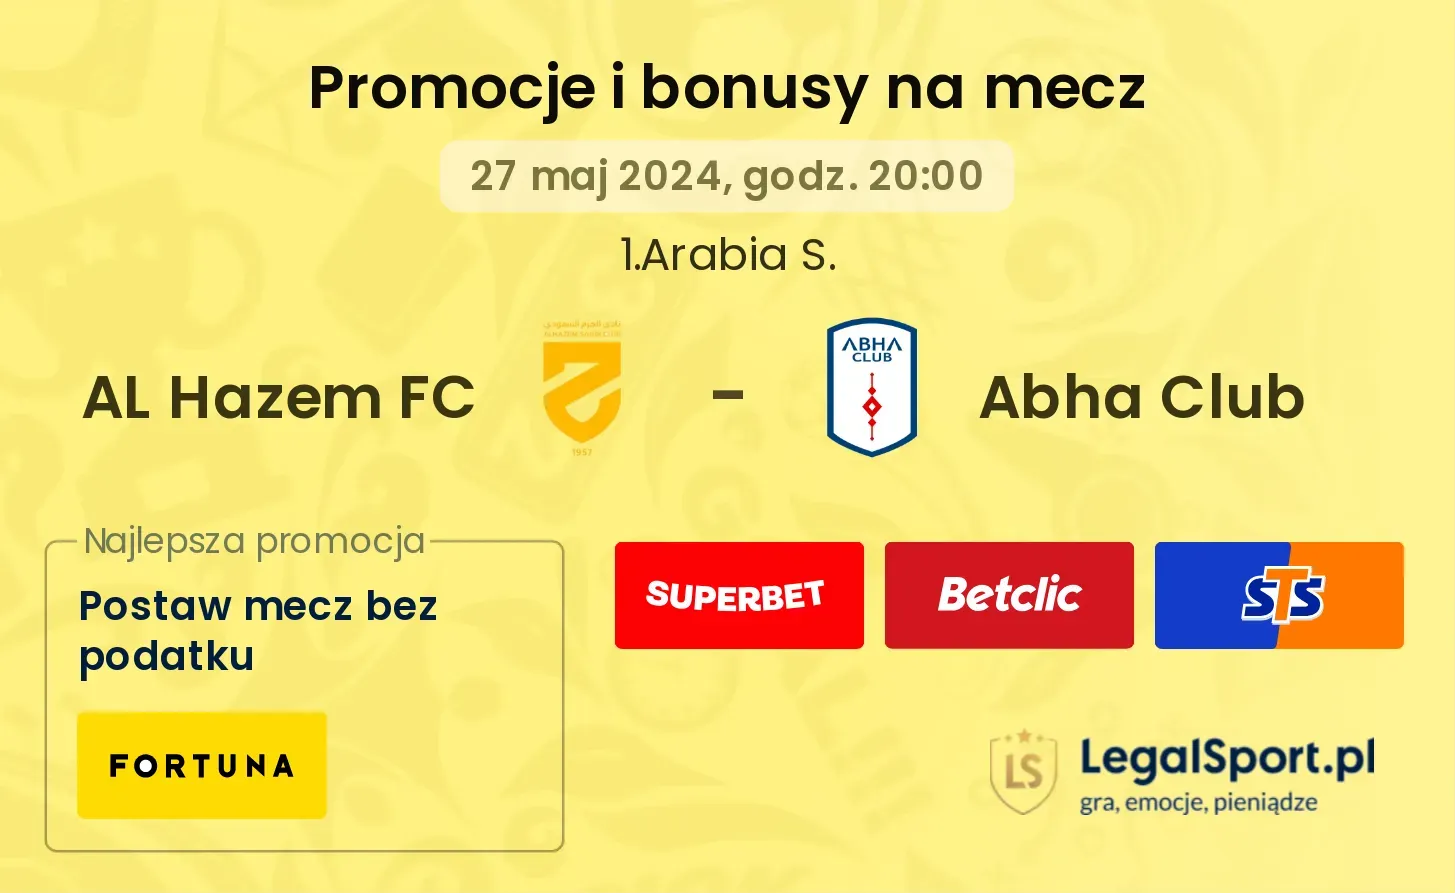 AL Hazem FC - Abha Club promocje bonusy na mecz